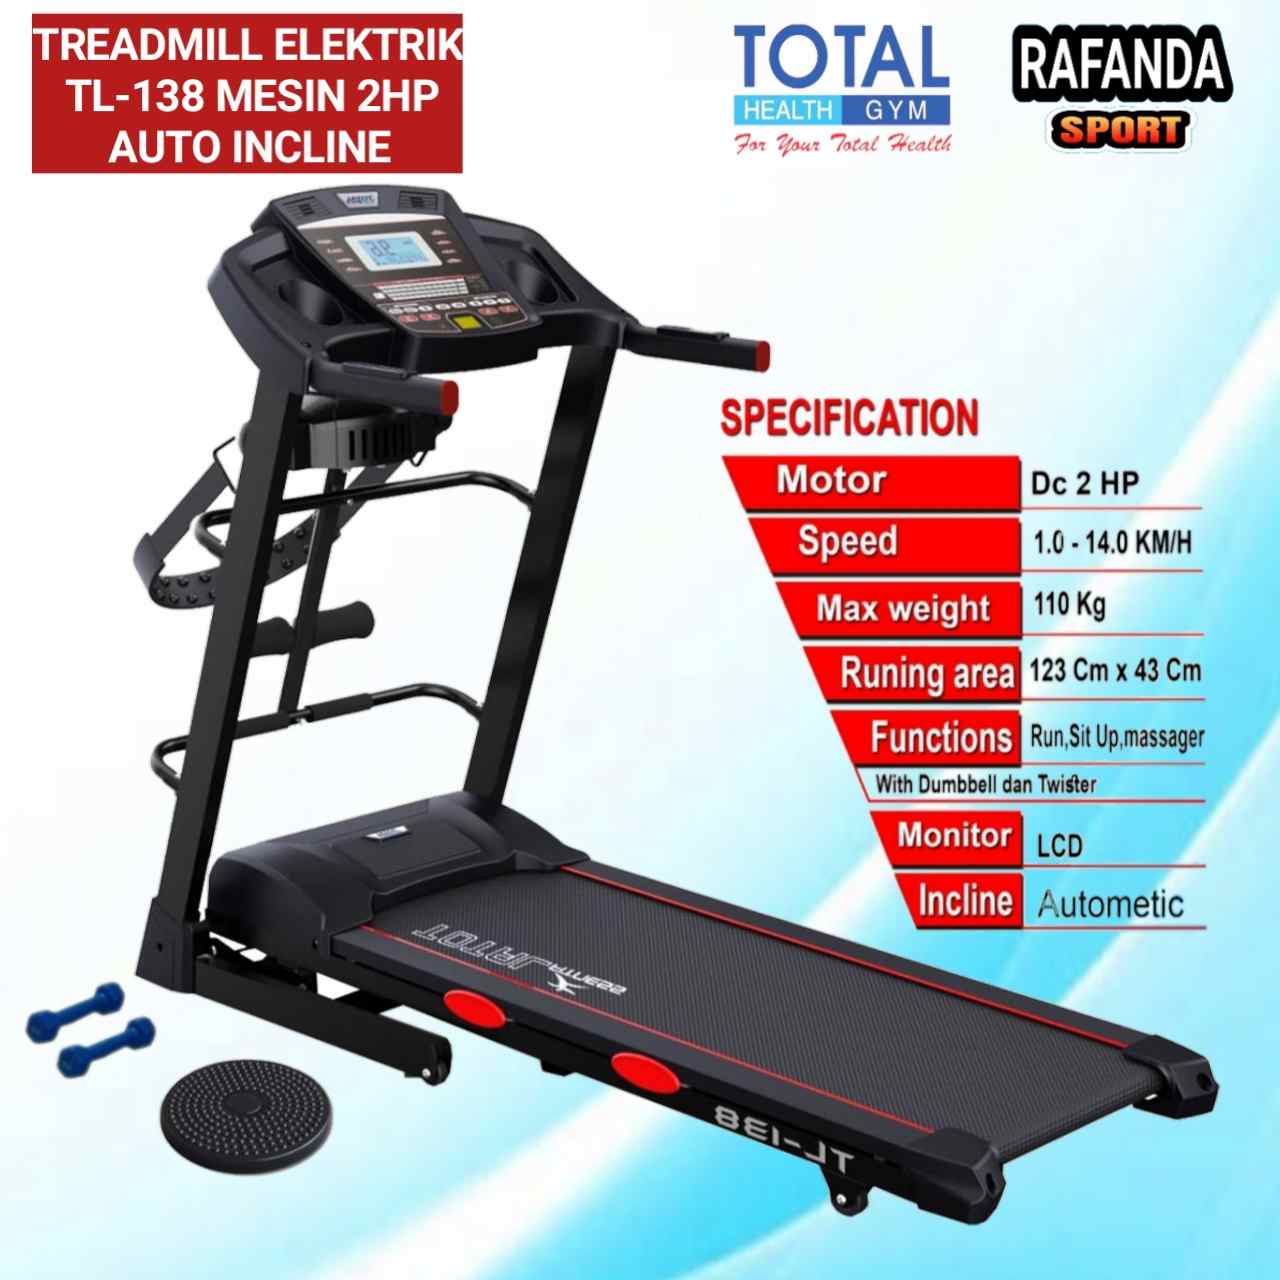 Tl138_treadmill_totalfitness_rafandasport